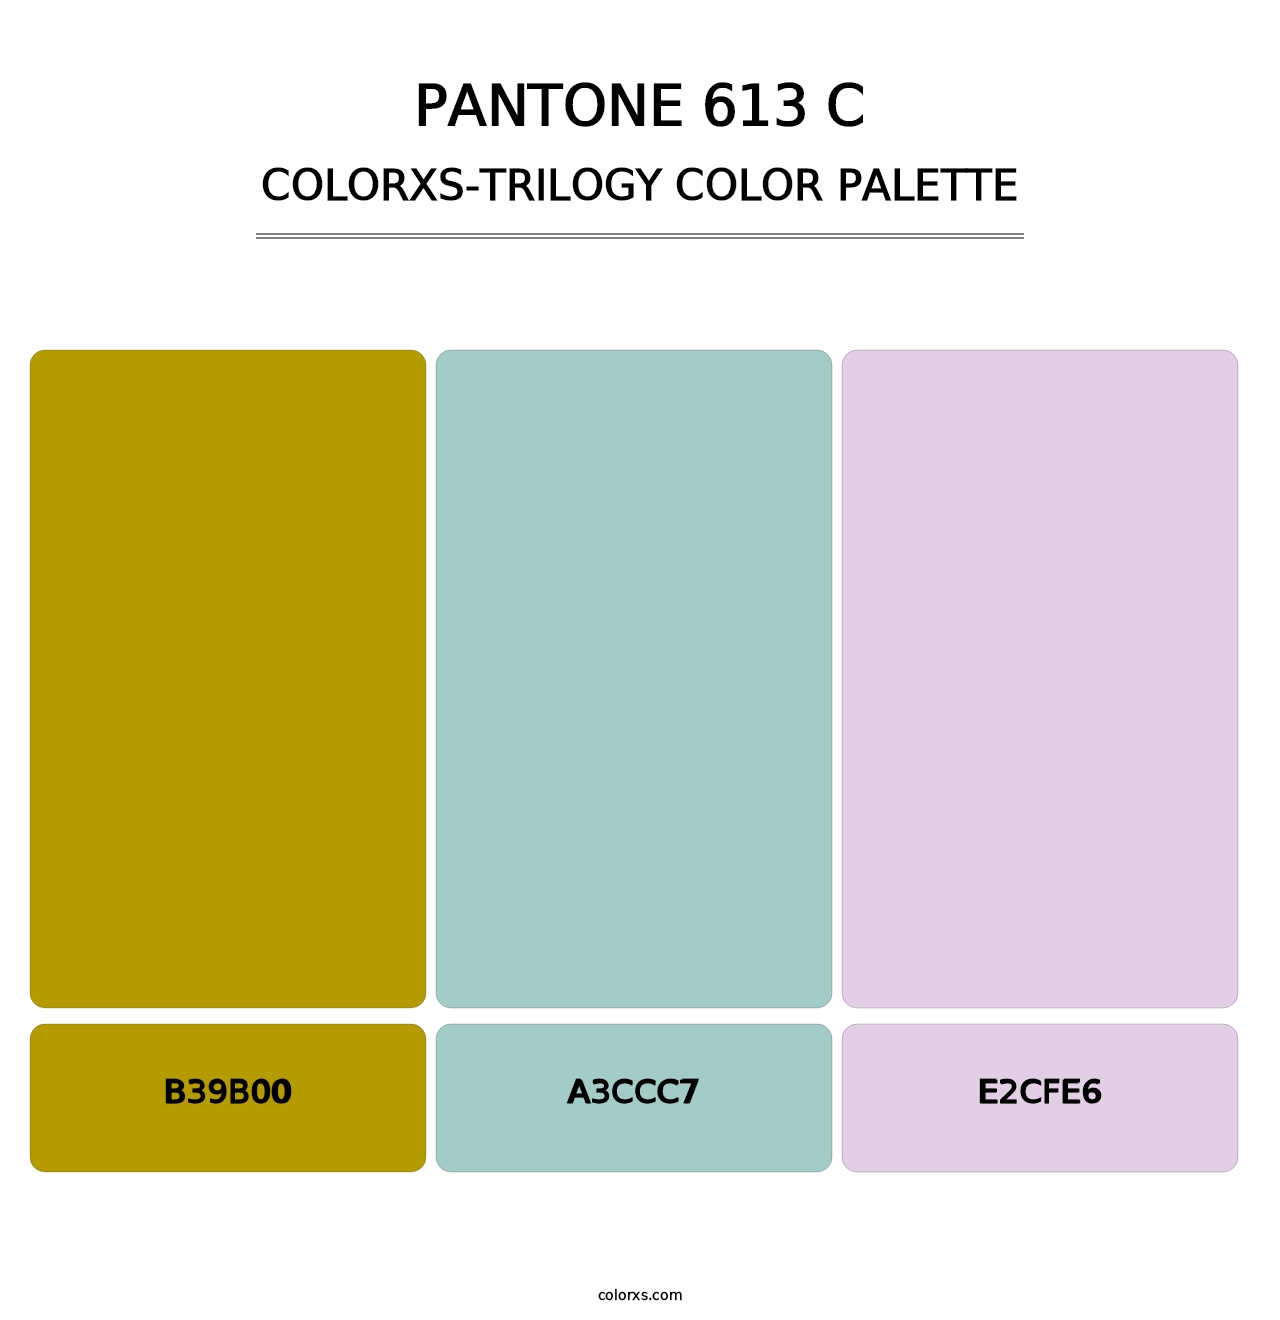 PANTONE 613 C - Colorxs Trilogy Palette